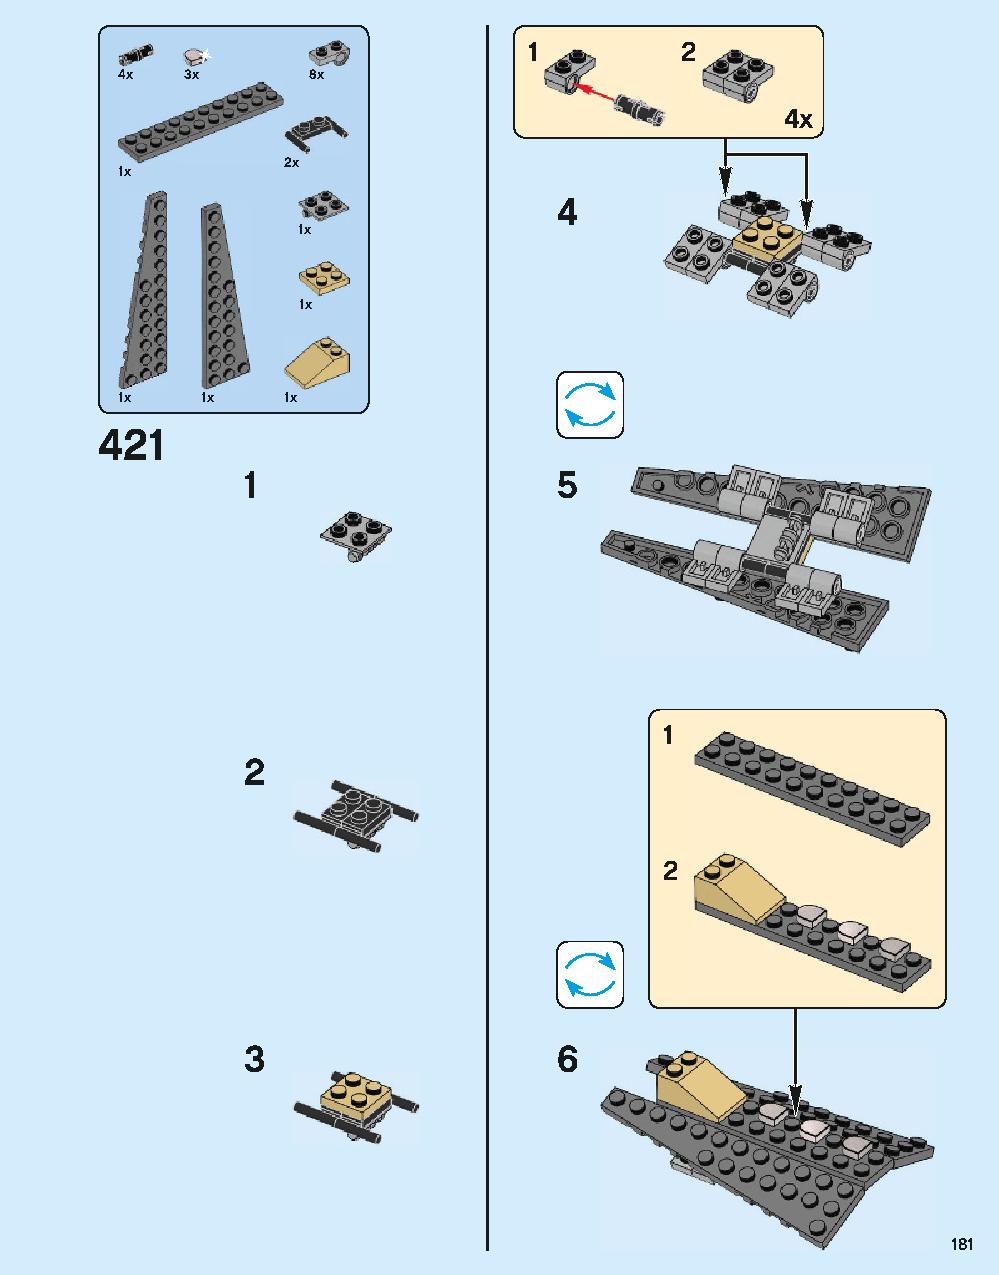 ホグワーツ城 71043 レゴの商品情報 レゴの説明書・組立方法 181 page